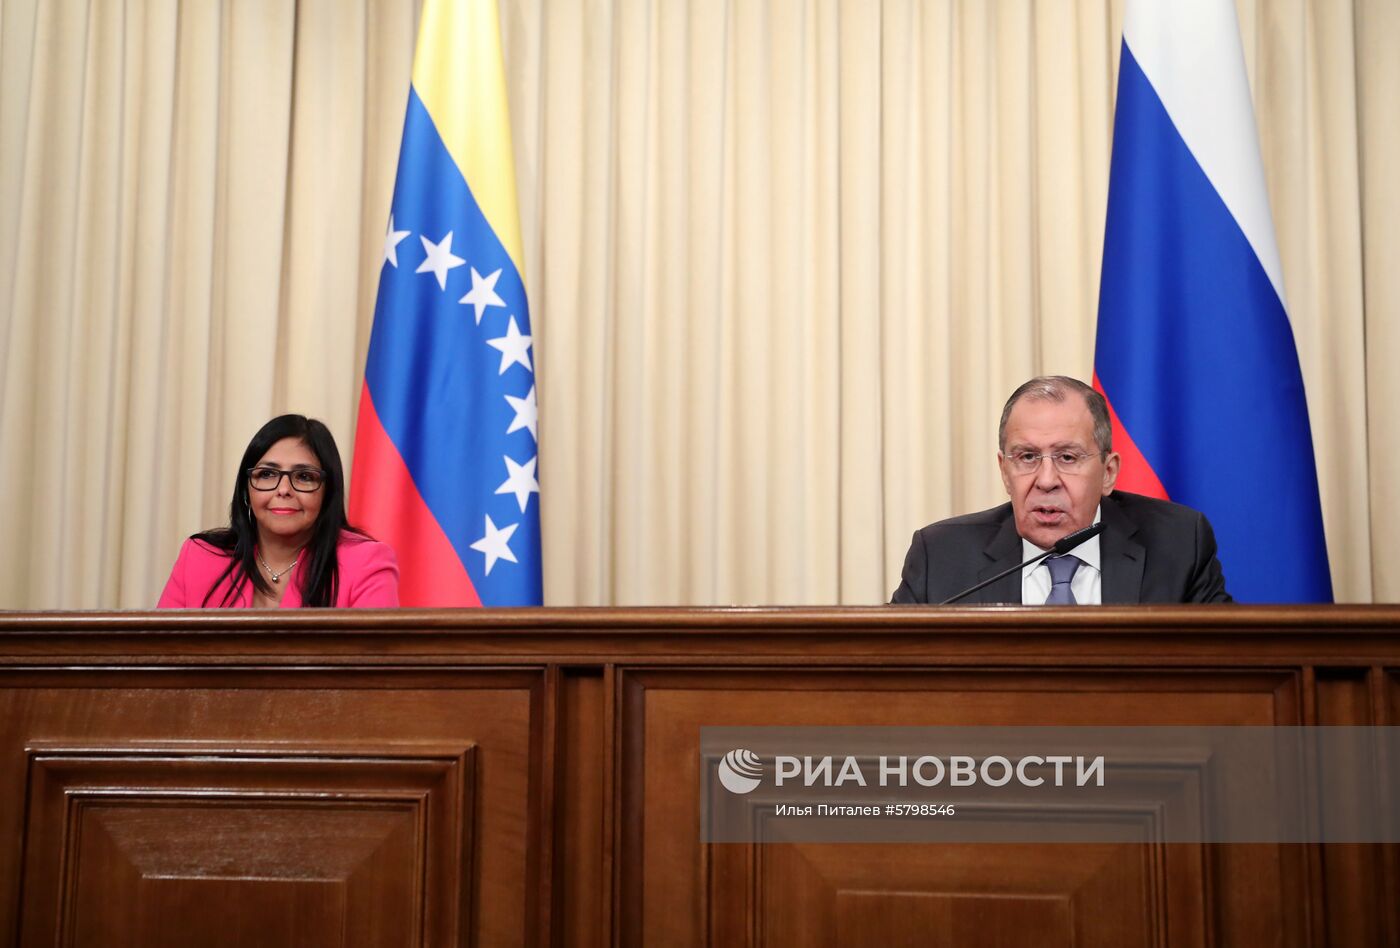 Встреча главы МИД РФ  С. Лаврова с вице-президентом Венесуэлы Д. Родригес